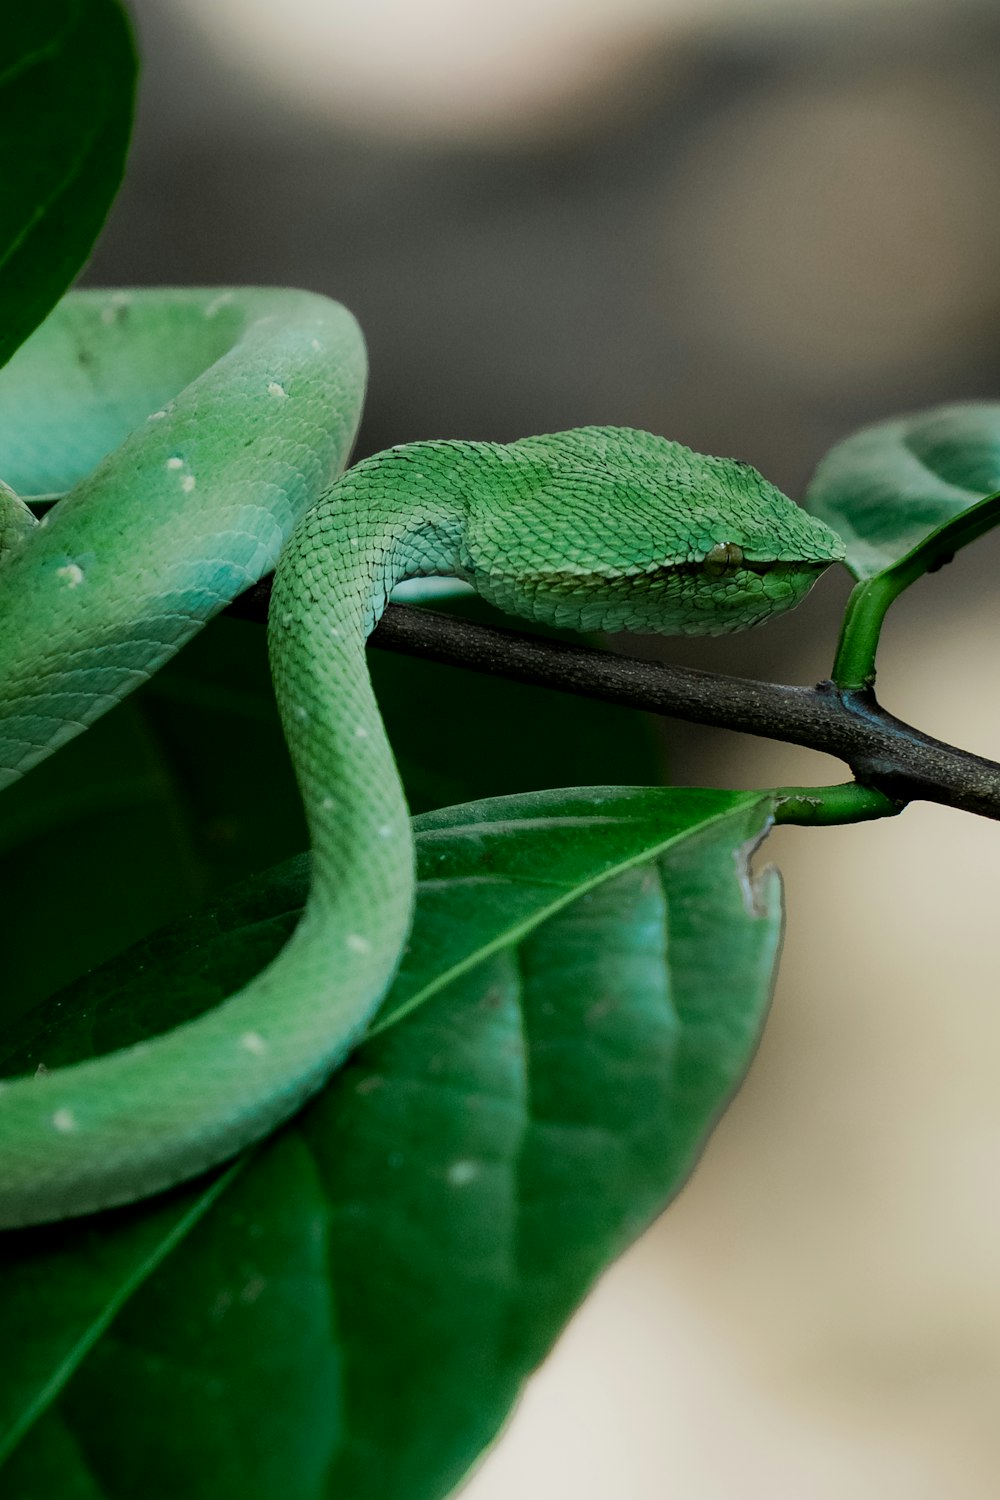 Una serpiente verde sentada encima de una hoja